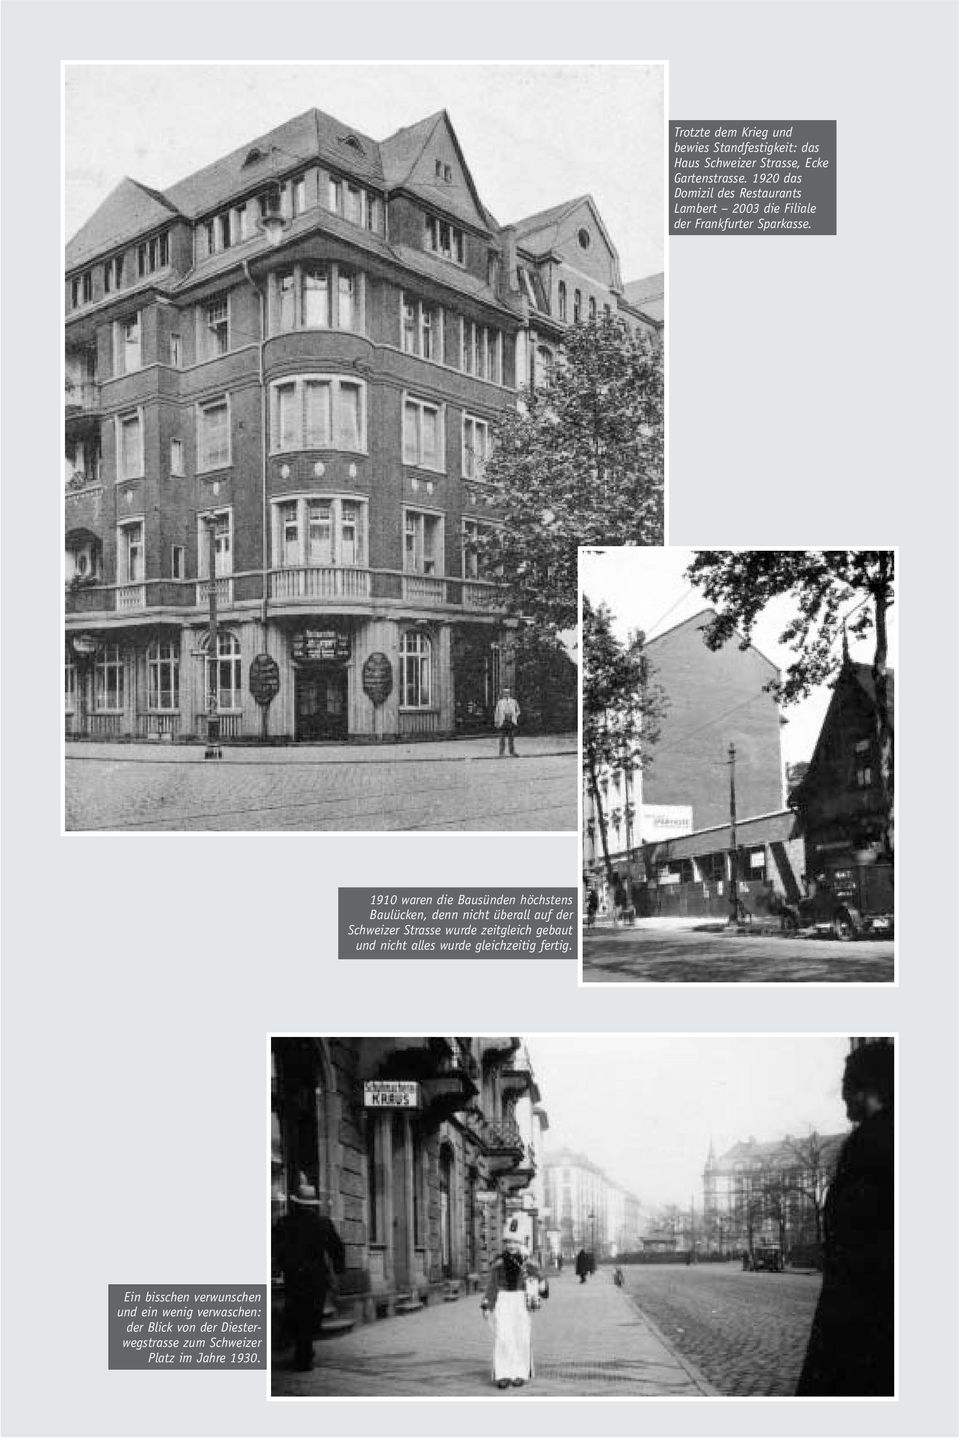 1910 waren die Bausünden höchstens Baulücken, denn nicht überall auf der Schweizer Strasse wurde zeitgleich gebaut